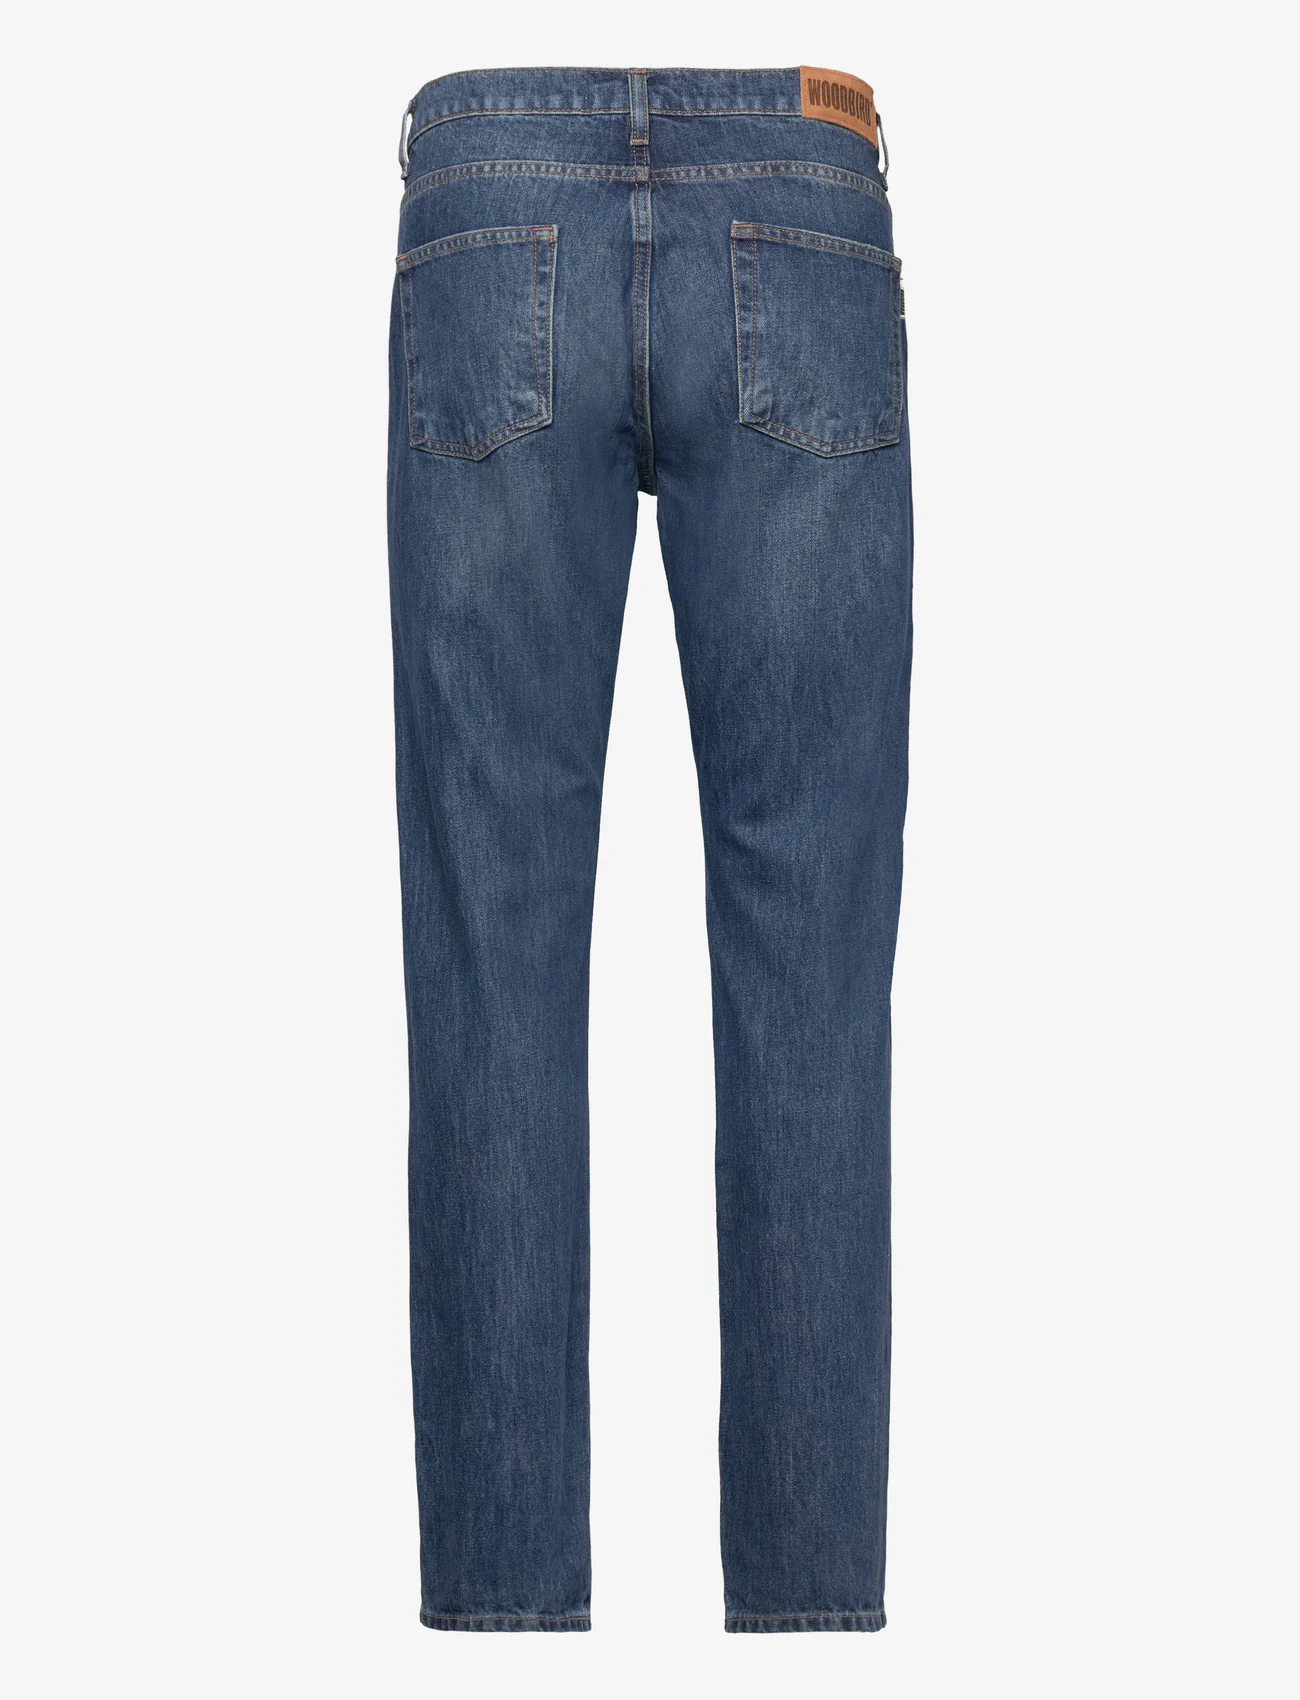 Woodbird - Doc Blooke Jeans - regular jeans - blue stone - 1